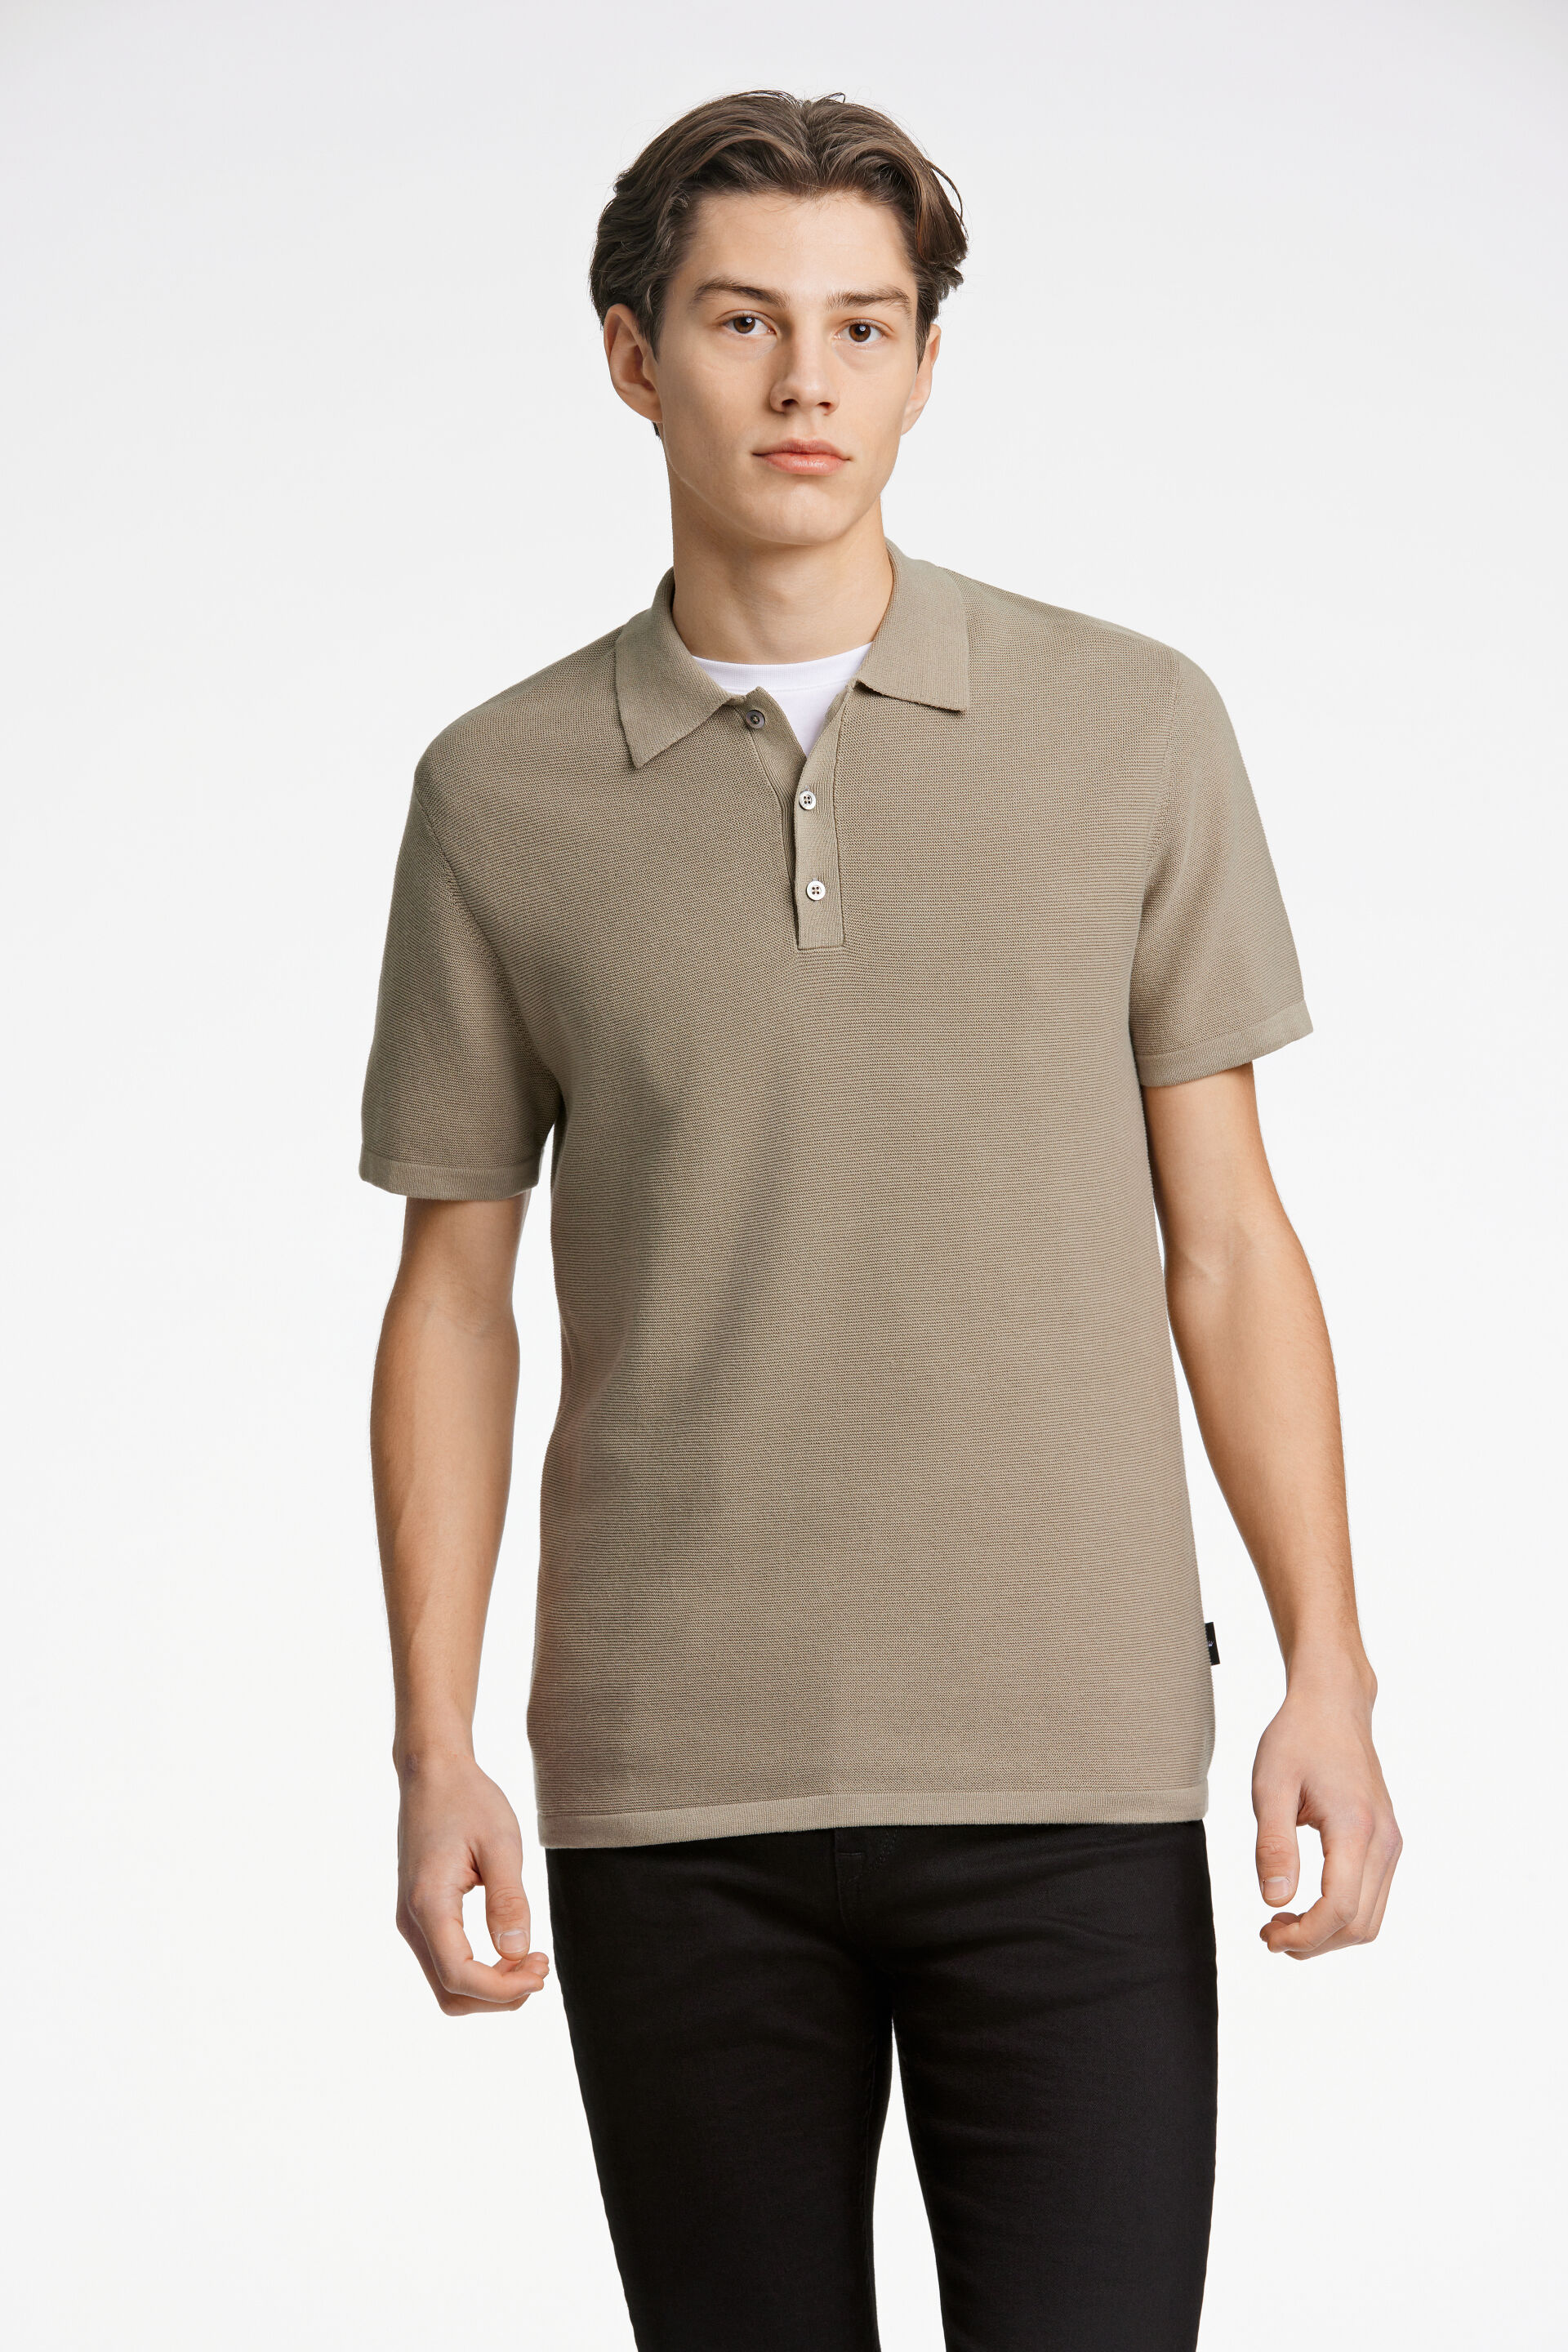 Polo shirt Polo shirt Grey 60-812011